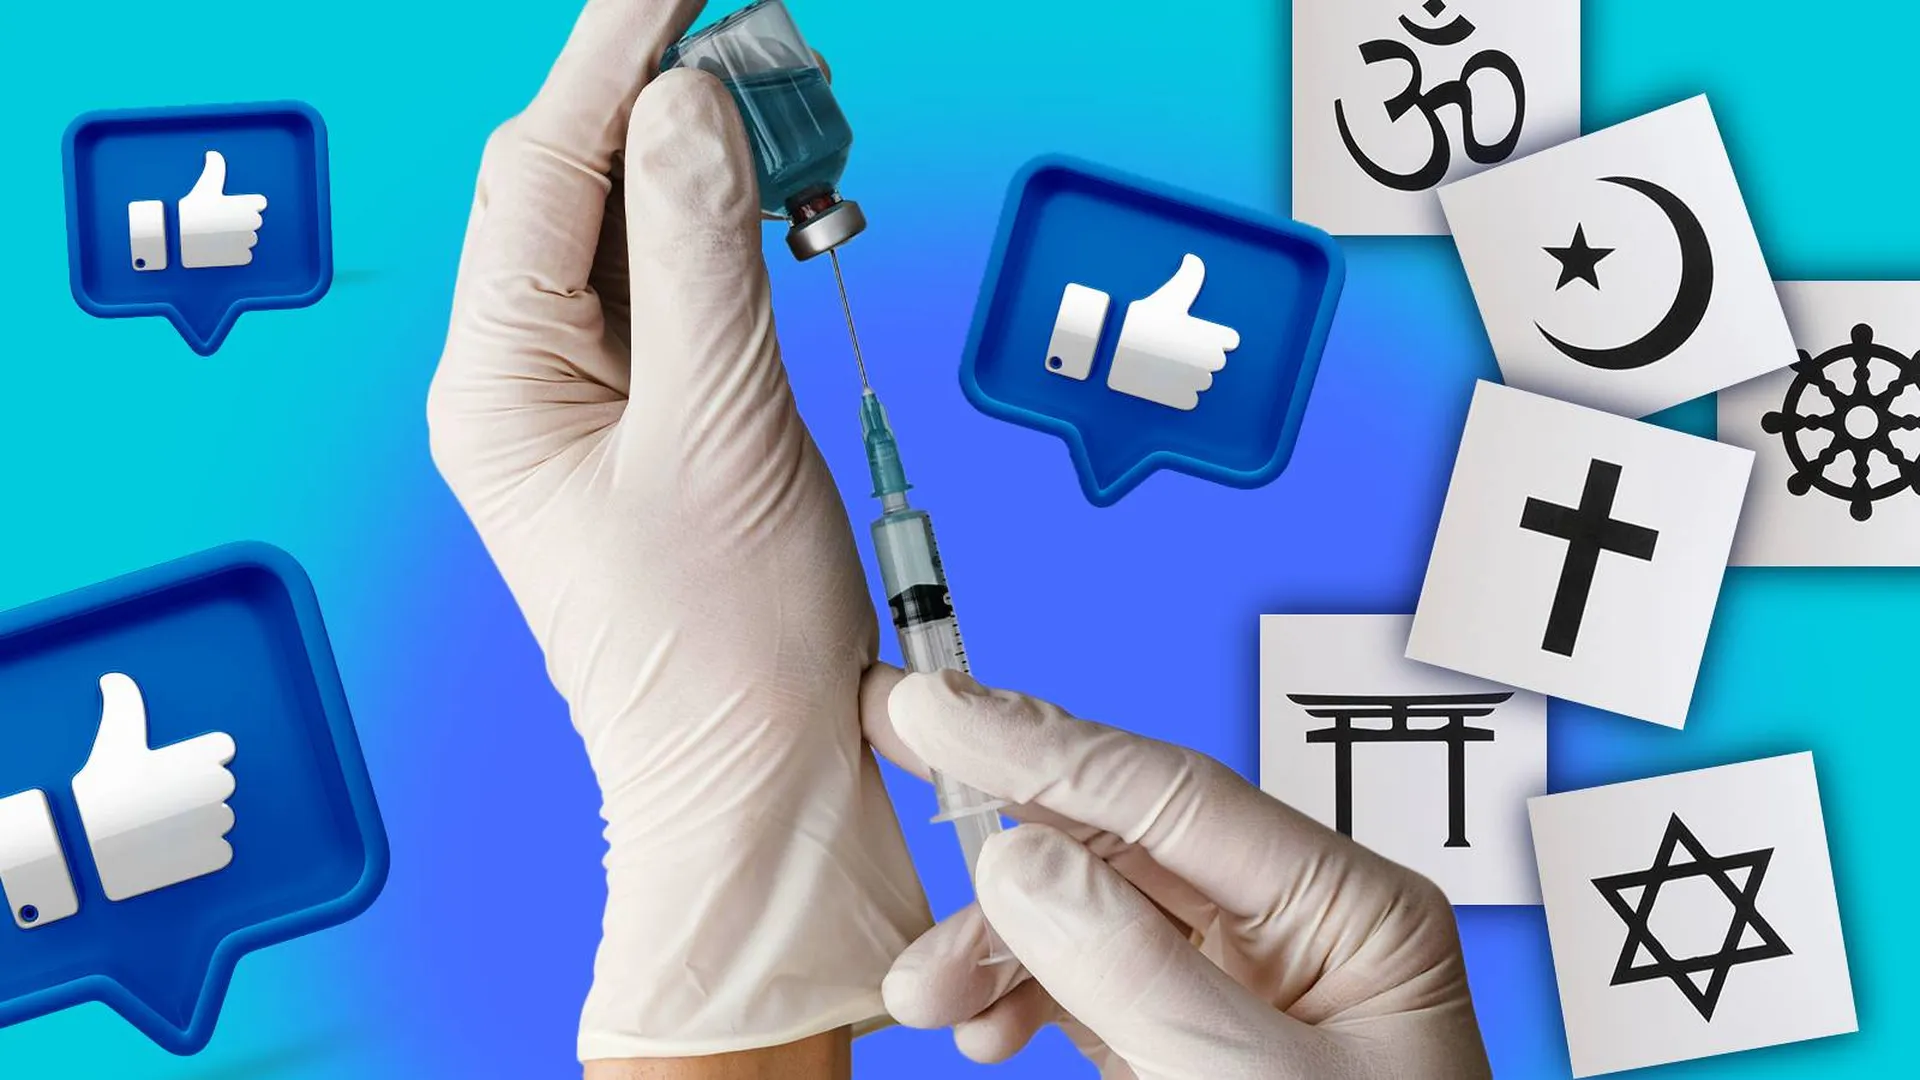 Руки медика со шприцом на фоне символов разных религий